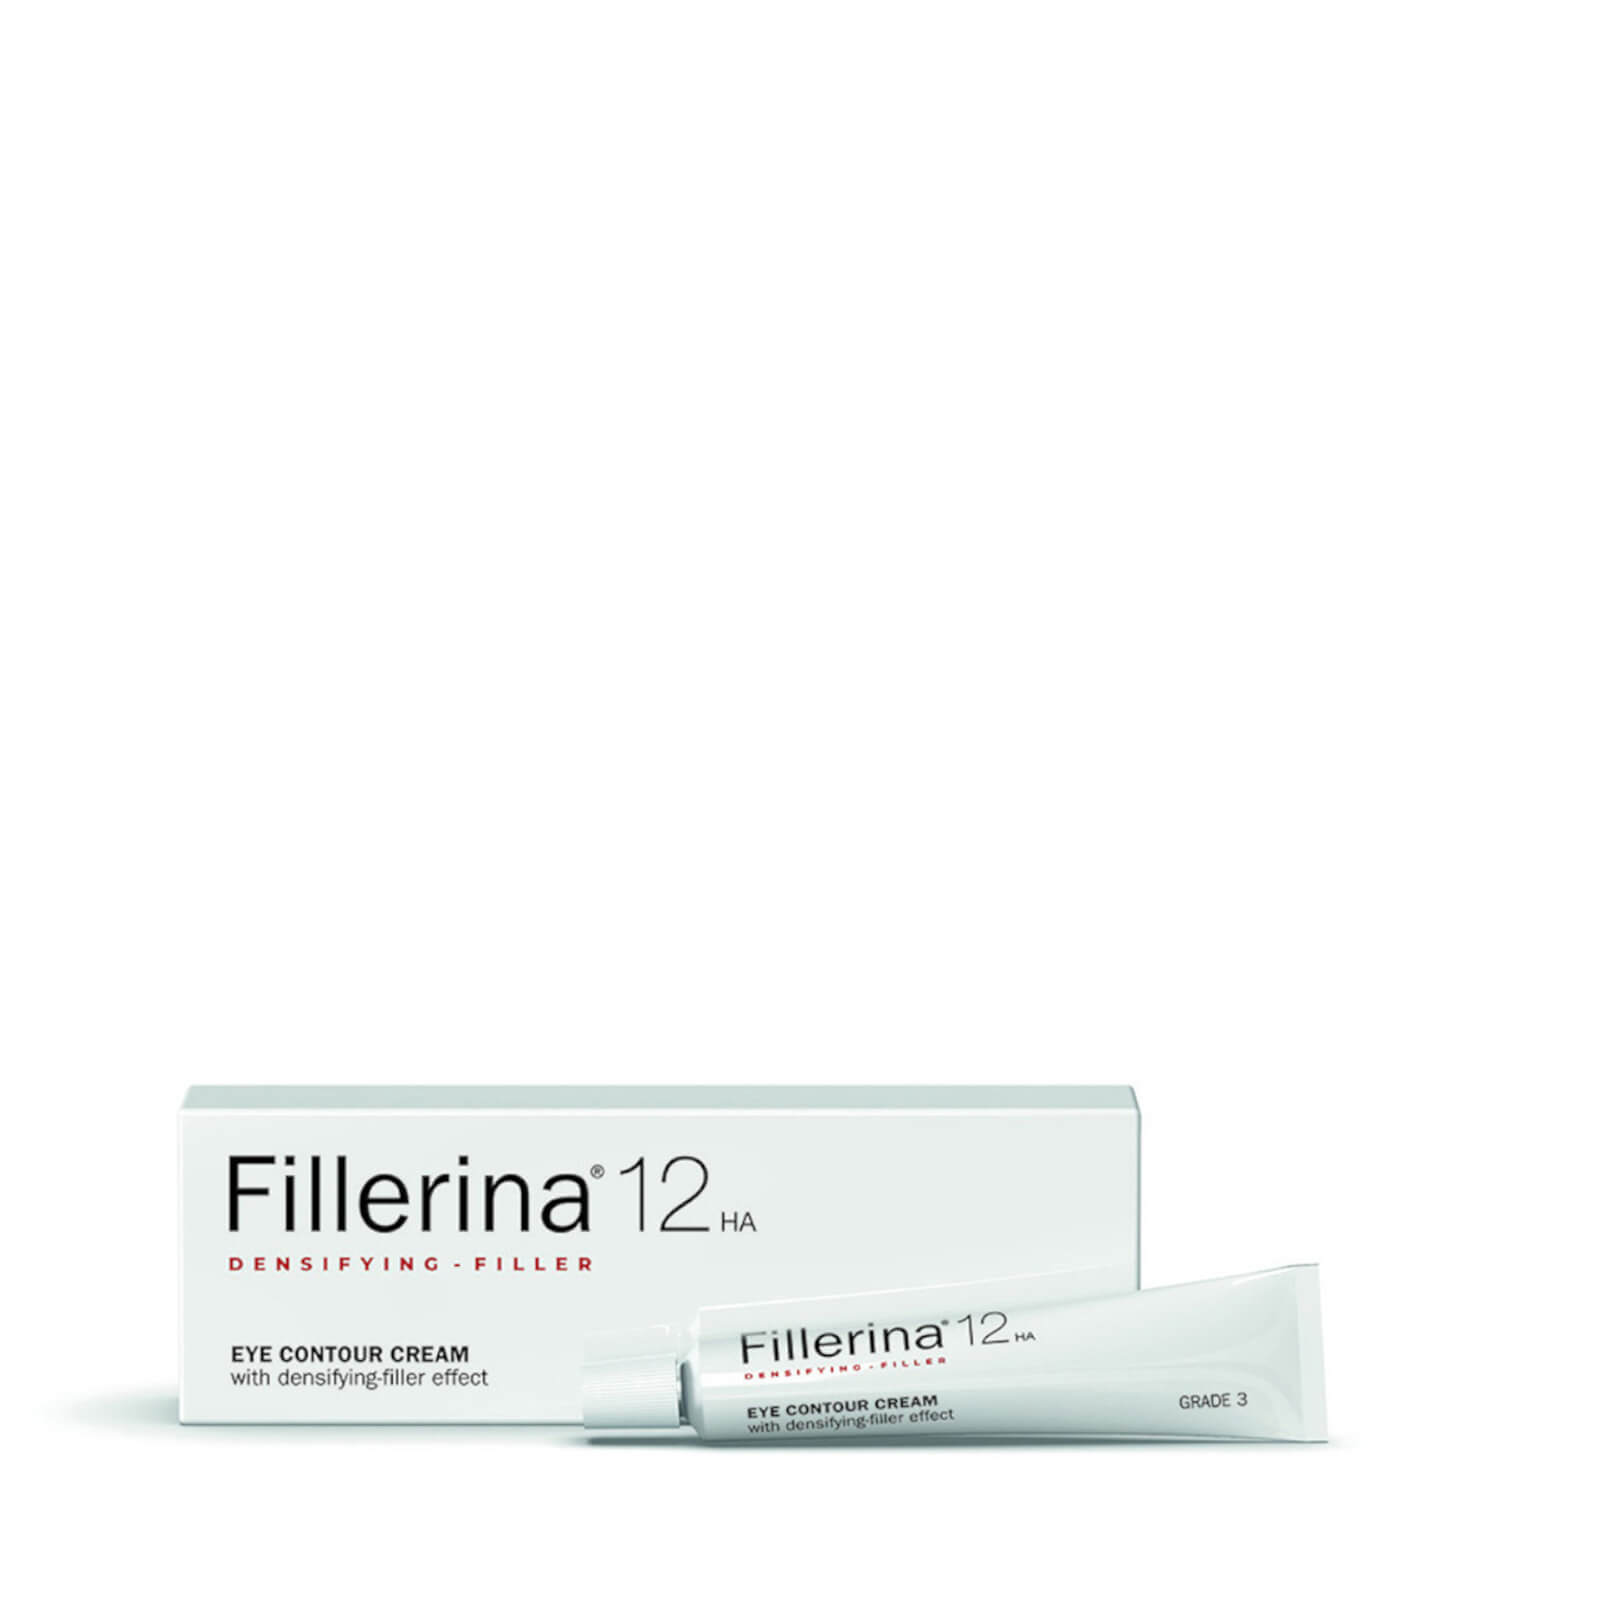 Photos - Cream / Lotion Fillerina 12 Densifying-Filler Eye Contour Cream - Grade 3 15ml 00831